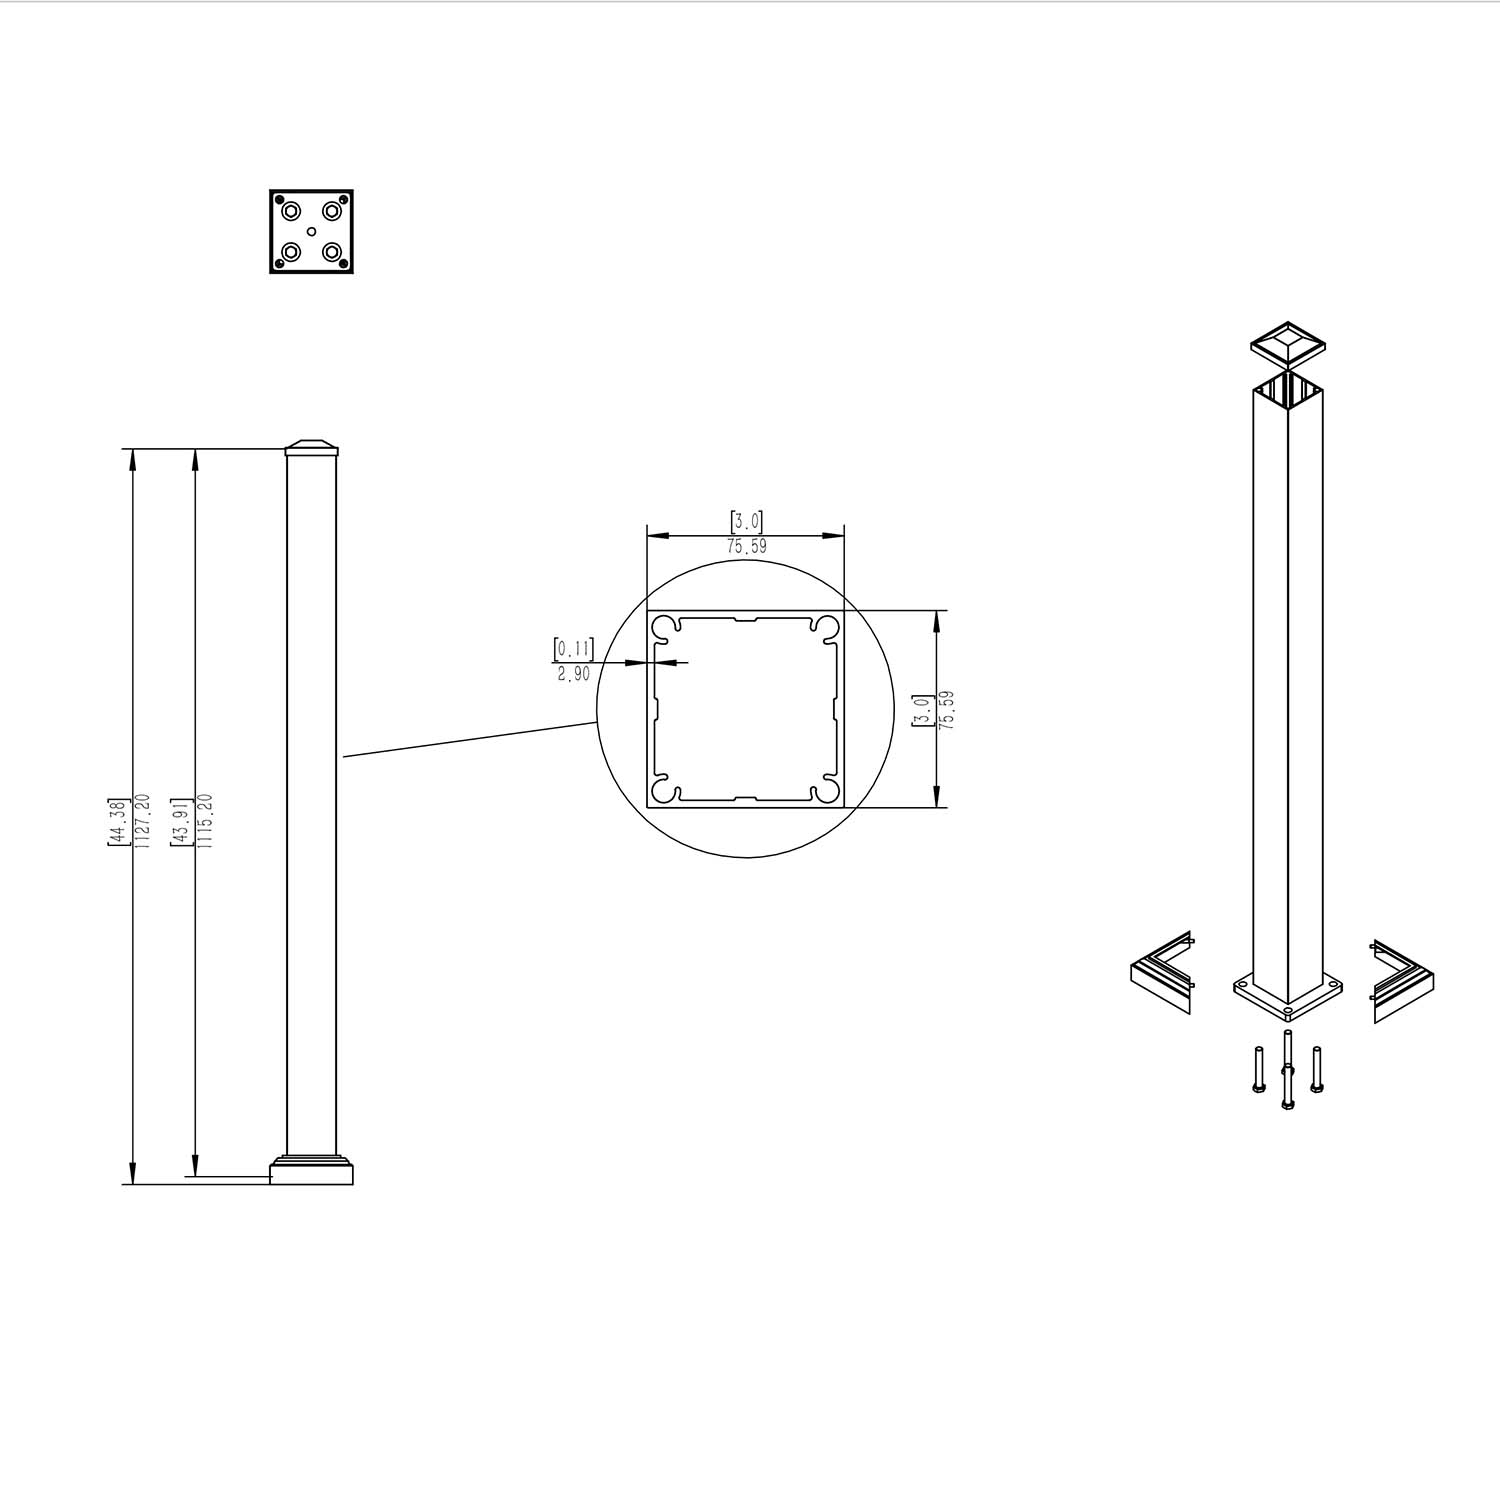 aluminium posts diagram for the handrail system